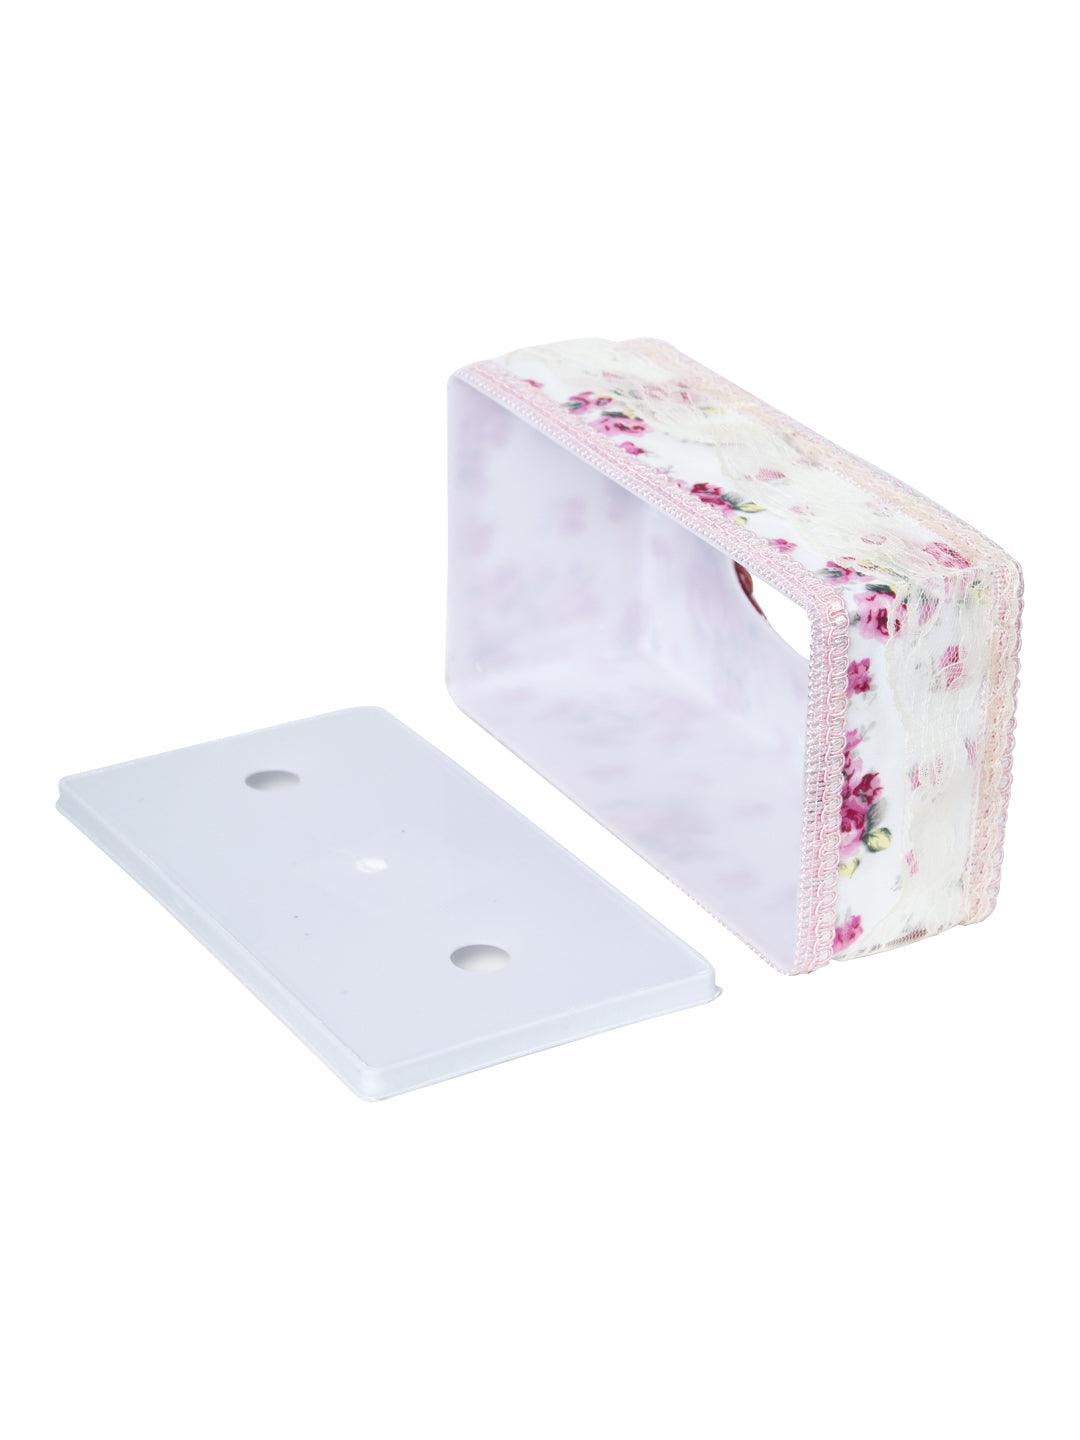 Pink Tissue Box - 22.4 X 12.4 X 8.3Cm - MARKET 99